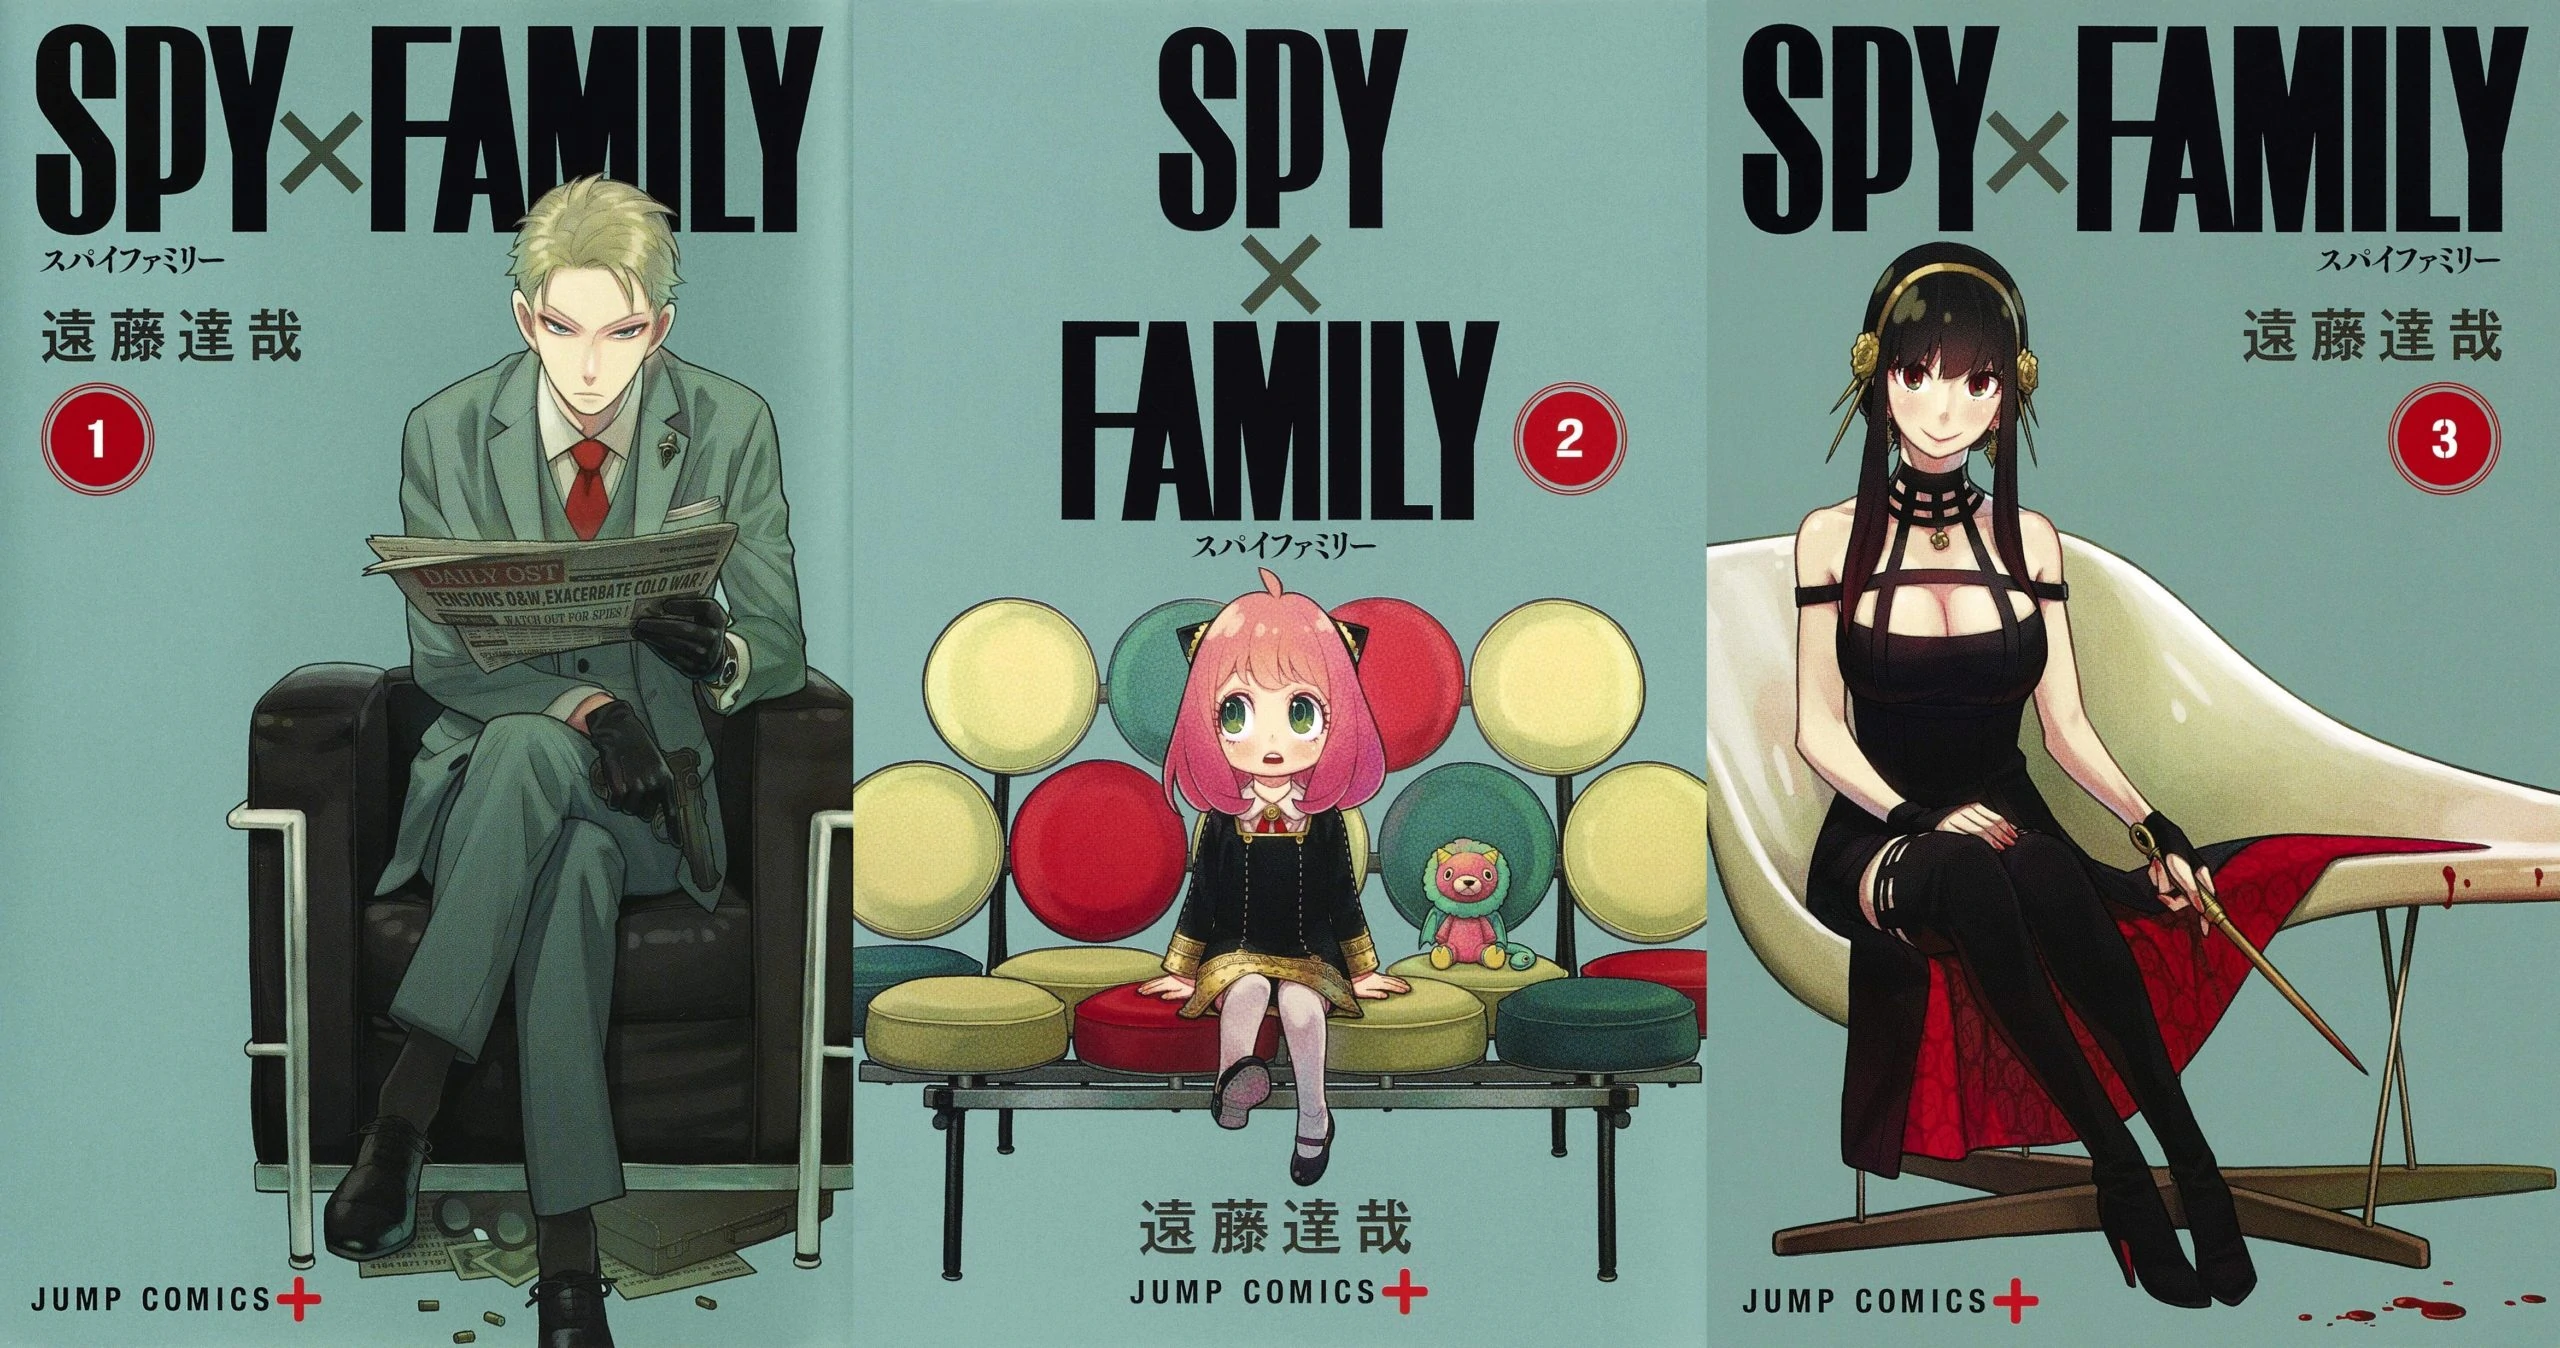 Spy x Family: já esta com data definida pra 2ª Temporada